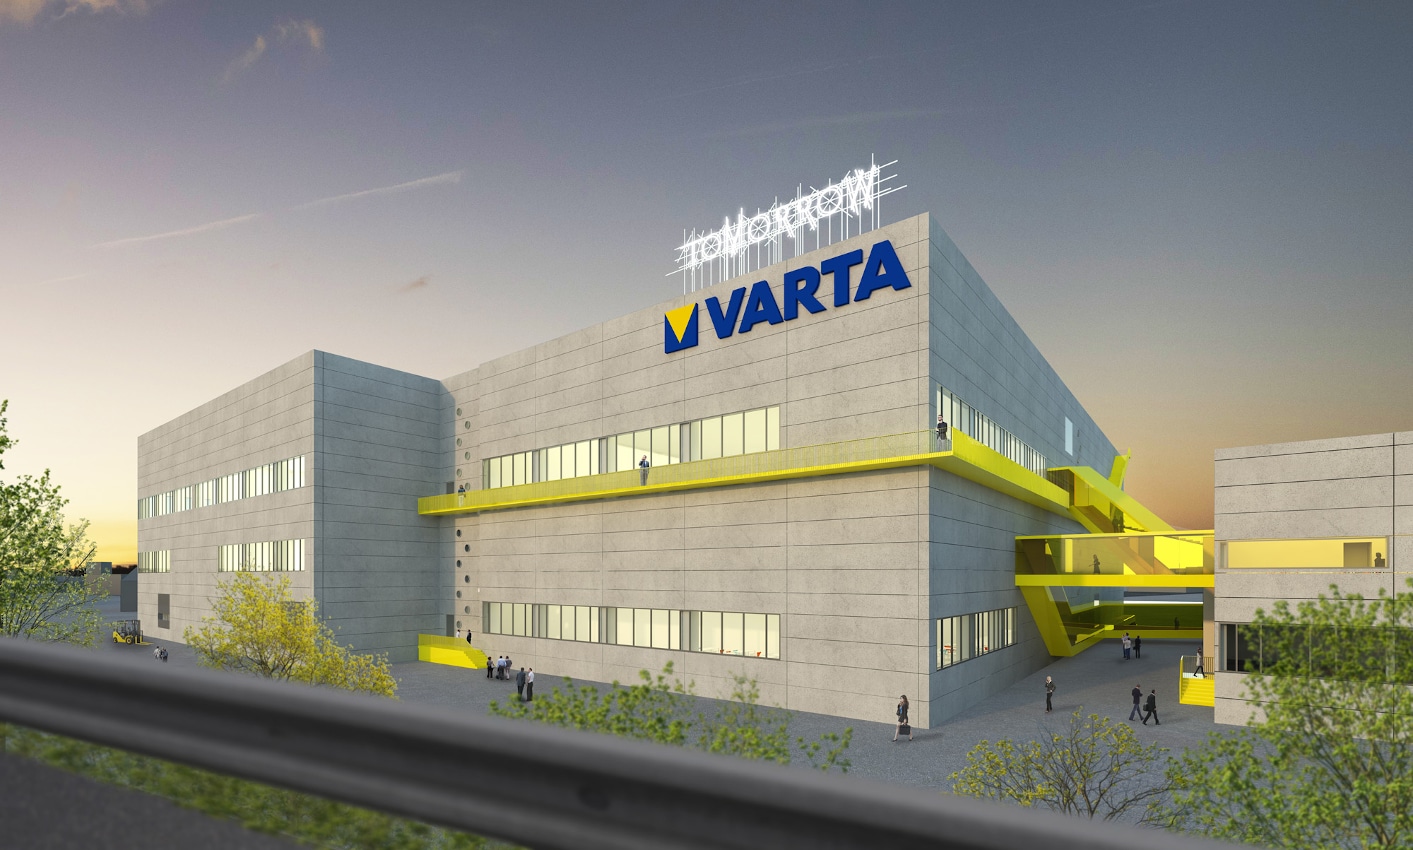 Bauprojektberatung für Batteriepionier VARTA – Conwick, Agentur für stressfreies Bauen